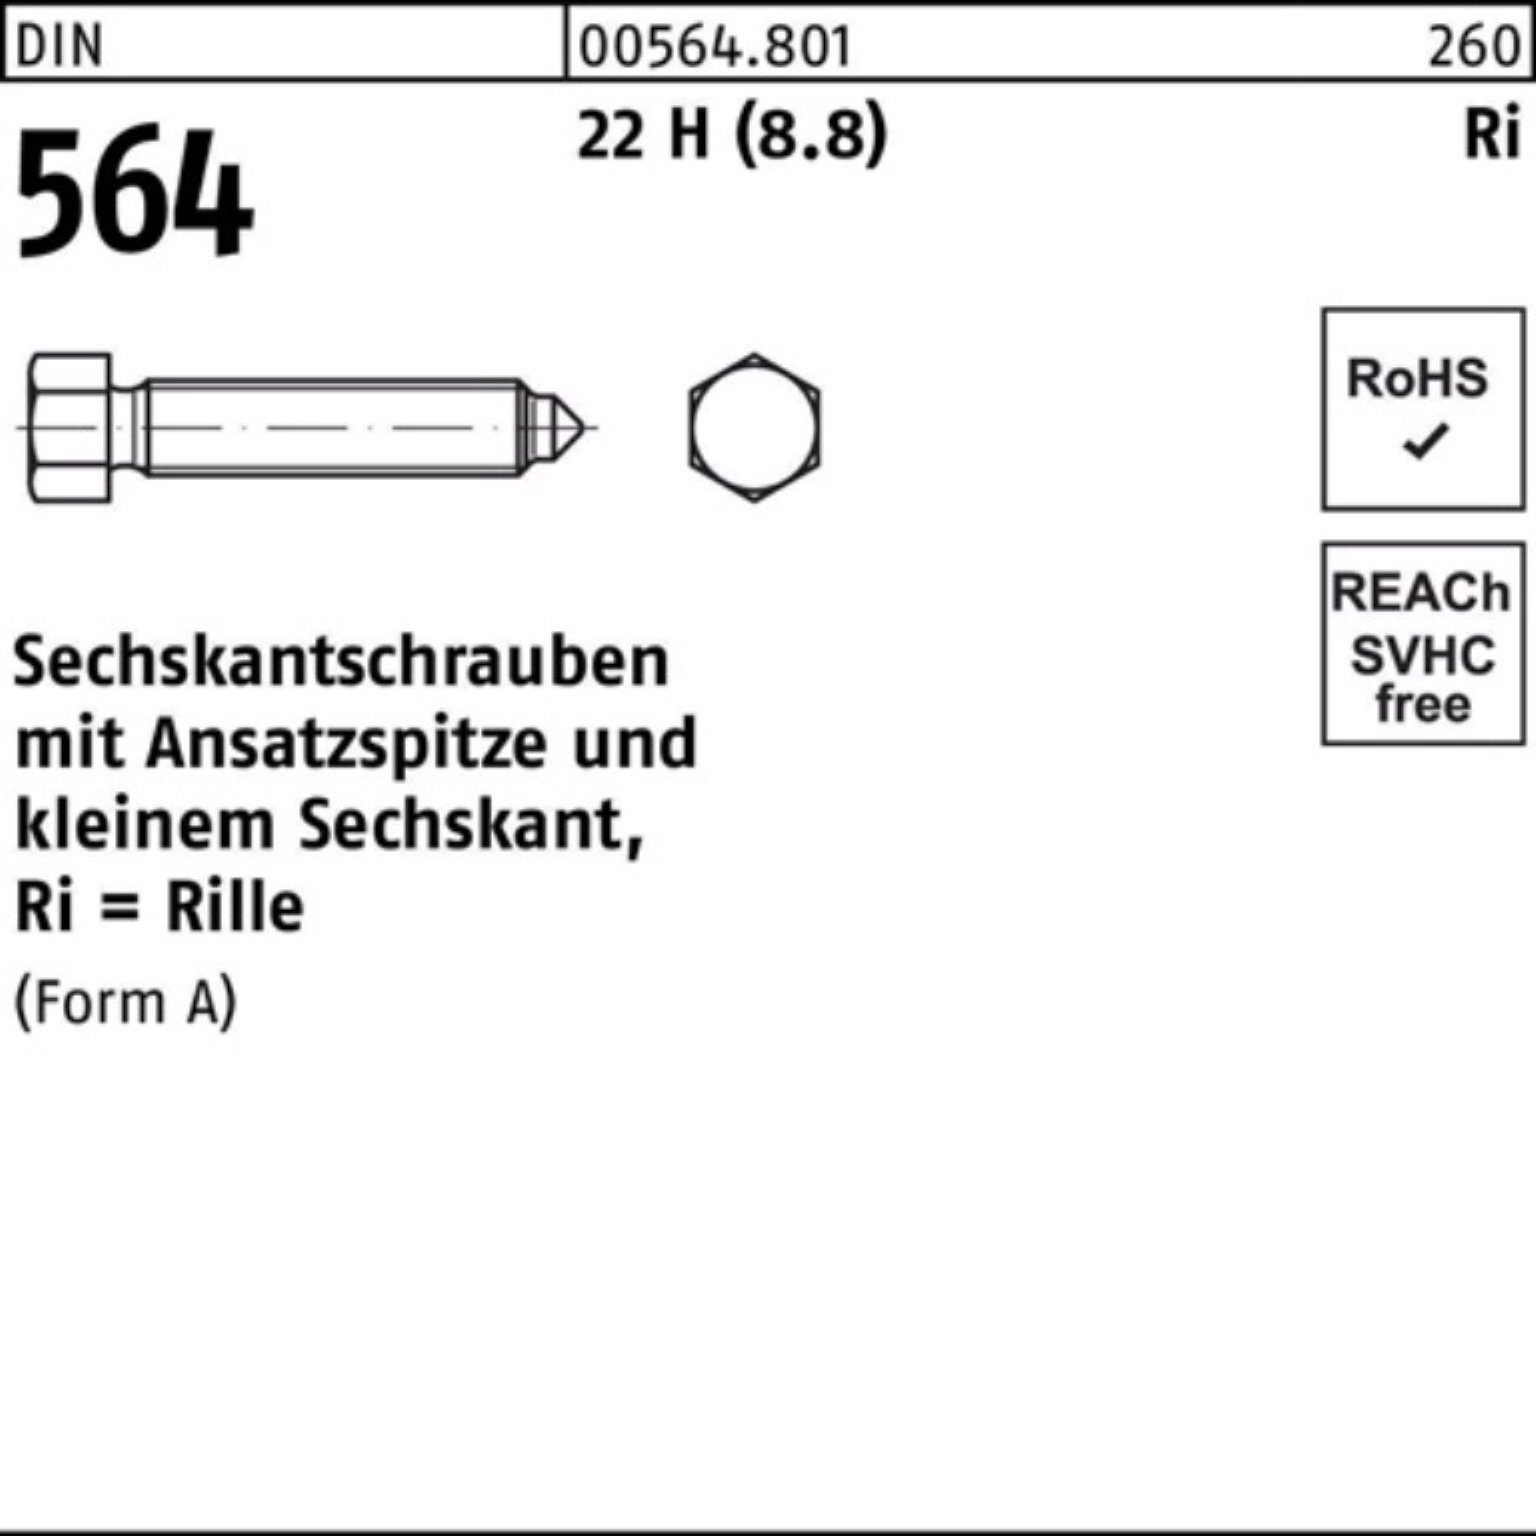 Reyher Sechskantschraube 100er Pack Sechskantschraube 60 AM 564 22 (8.8) Ansatzspitze H 16x DIN